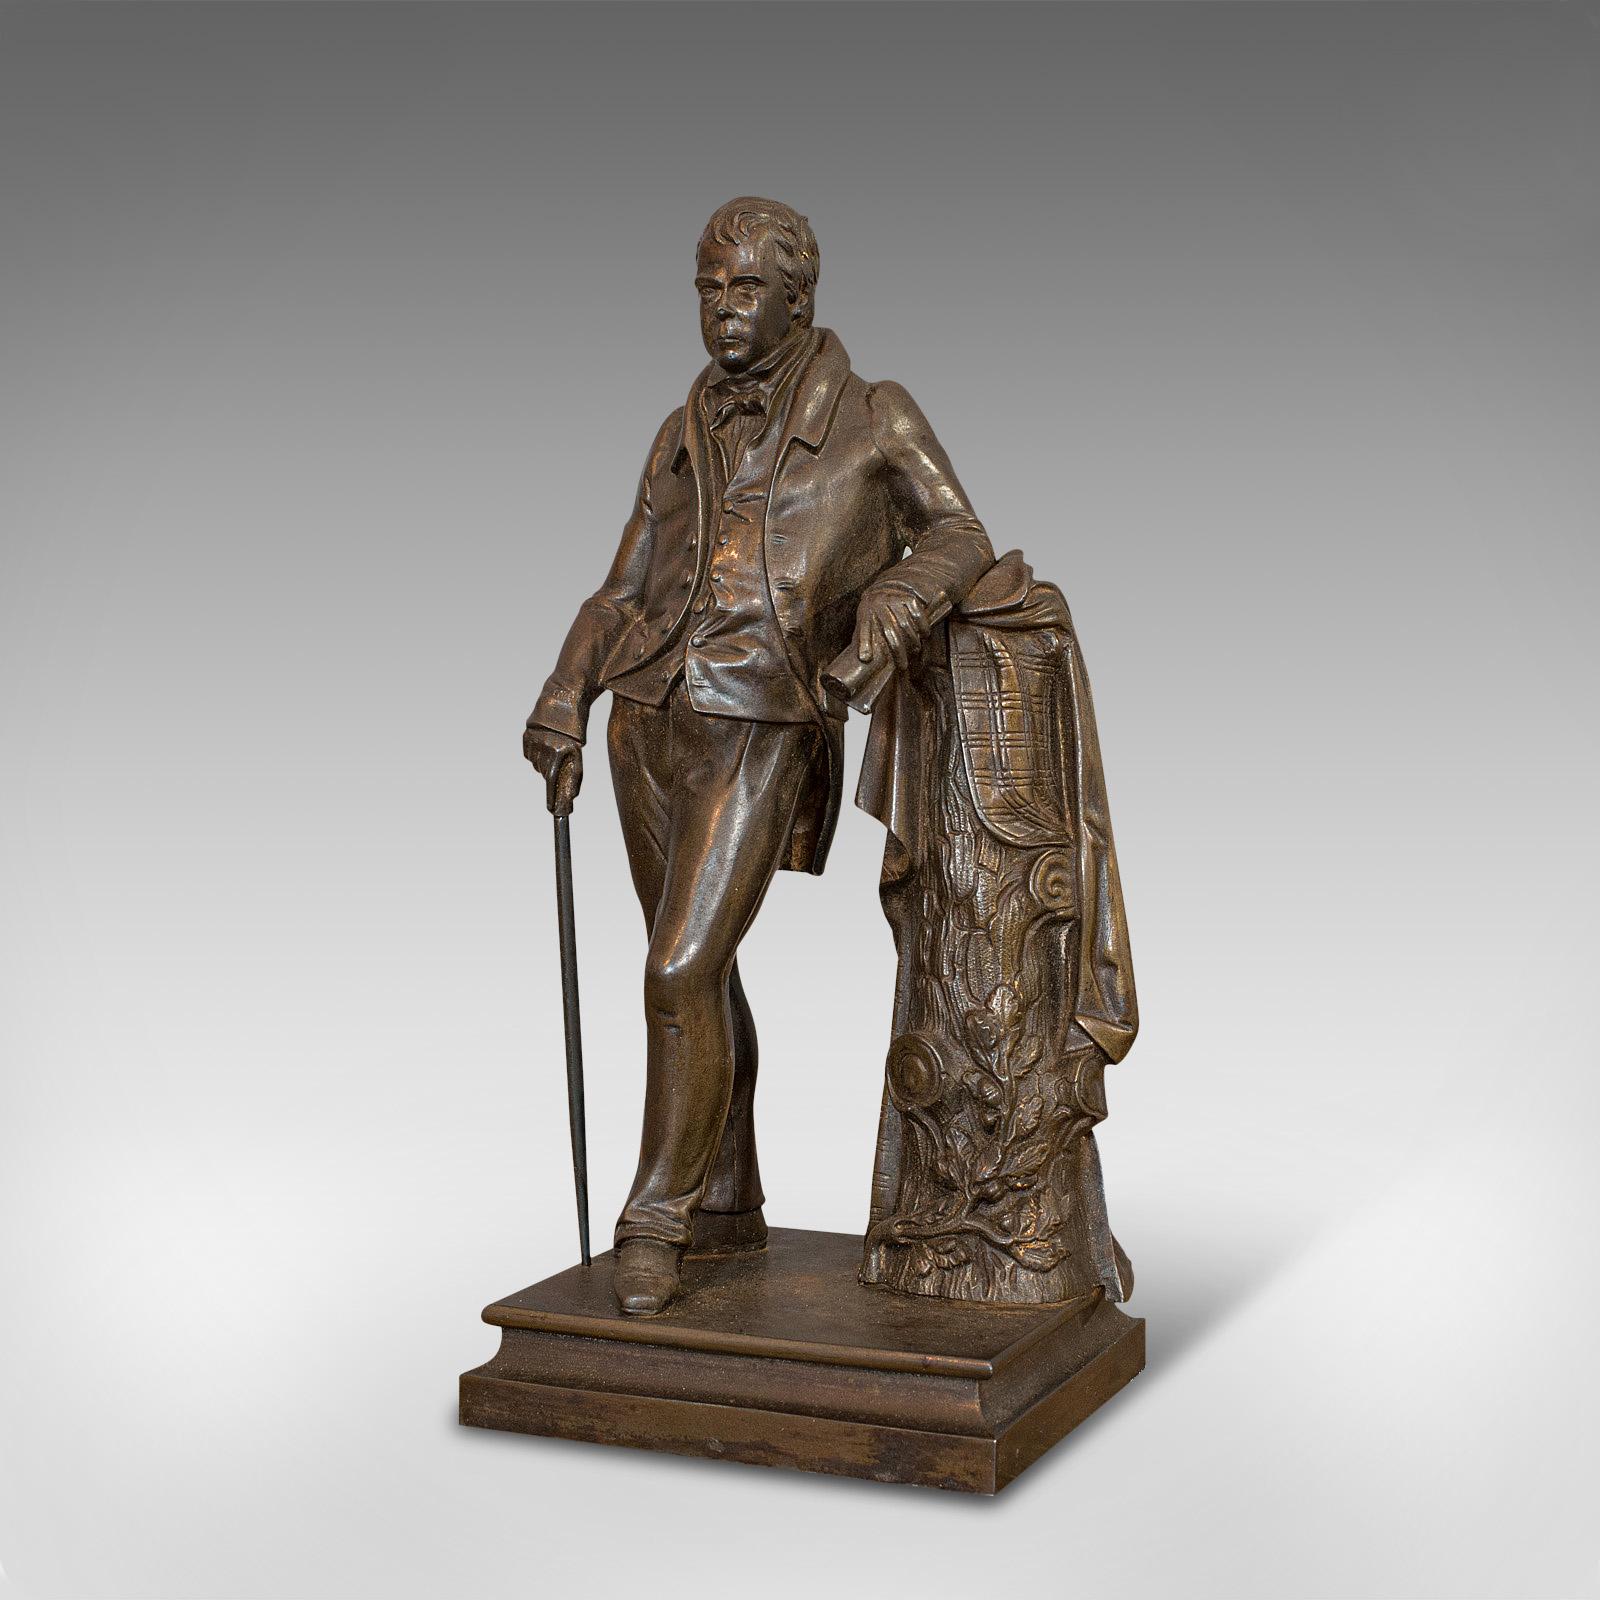 British Antique Figure, Sir Walter Scott, Bronze, Statue, Poet, Victorian, circa 1880